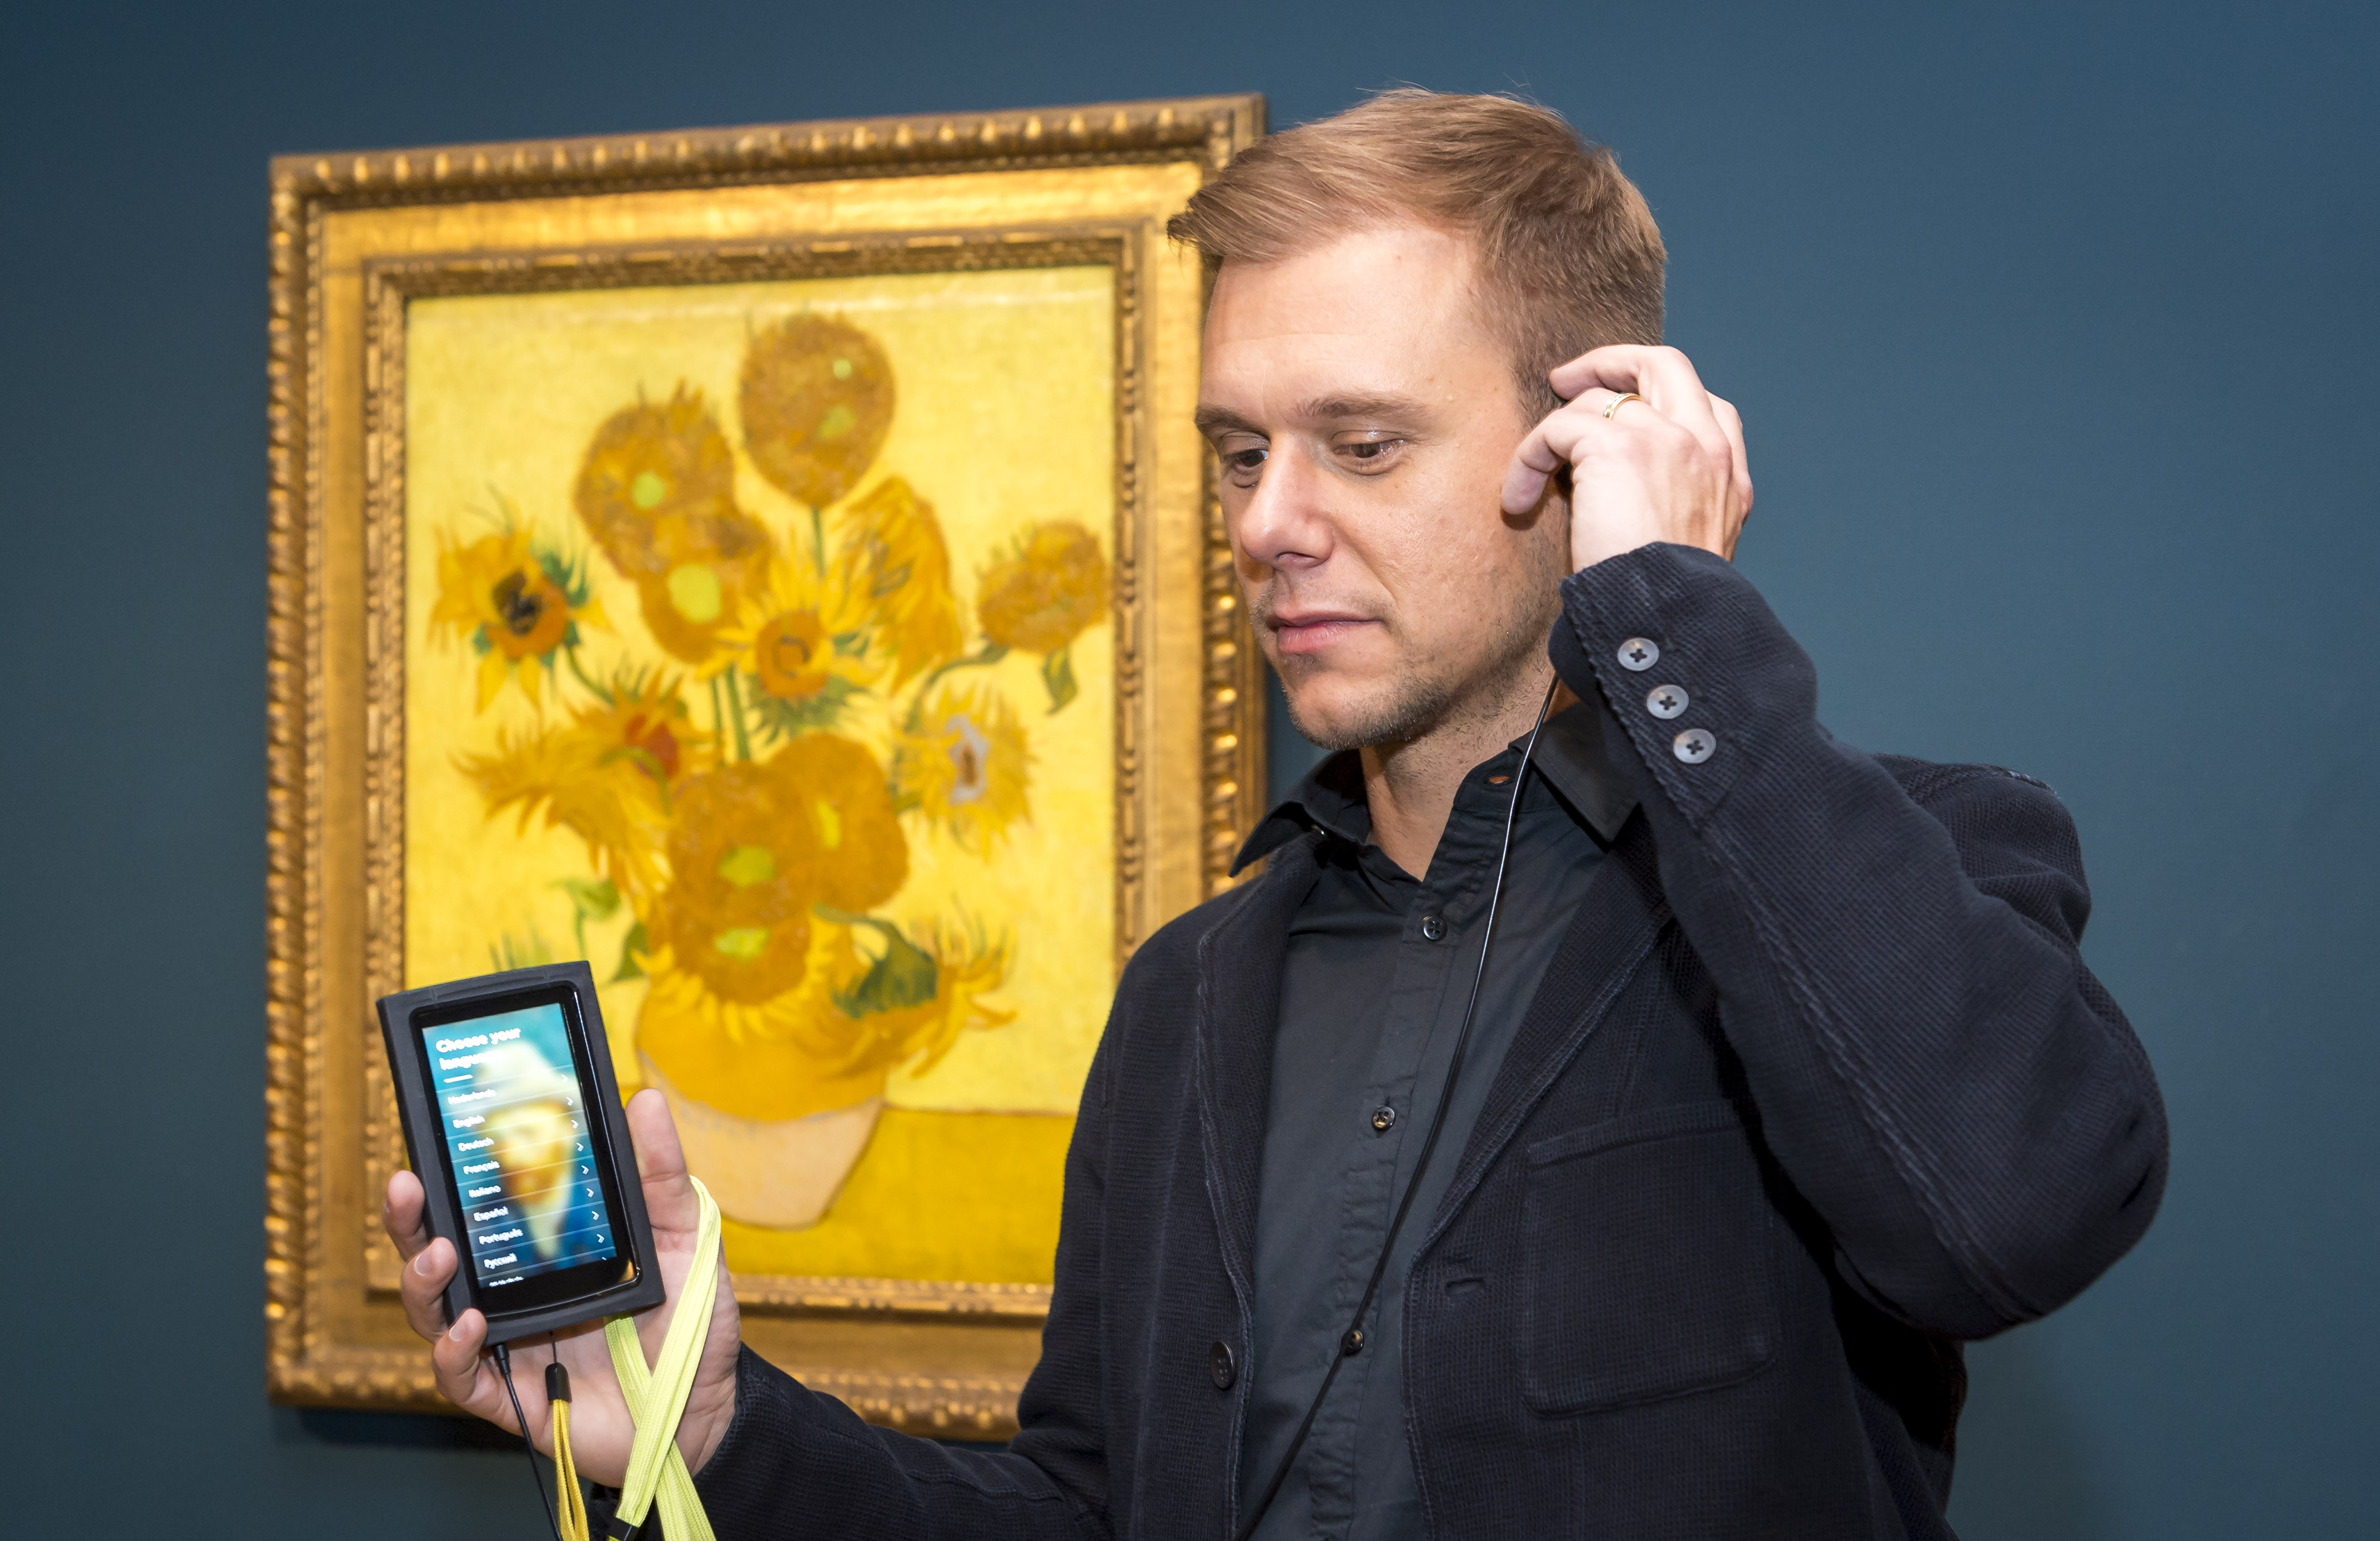 2016-10-21 14:29:14 AMSTERDAM - Armin van Buuren en directeur Axel Ruger van het Van Gogh Museum tijdens de opening van Embrace Vincent, een multimediatour samengesteld door de dj speciaal voor het Van Gogh. ANP KIPPA LEX VAN LIESHOUT